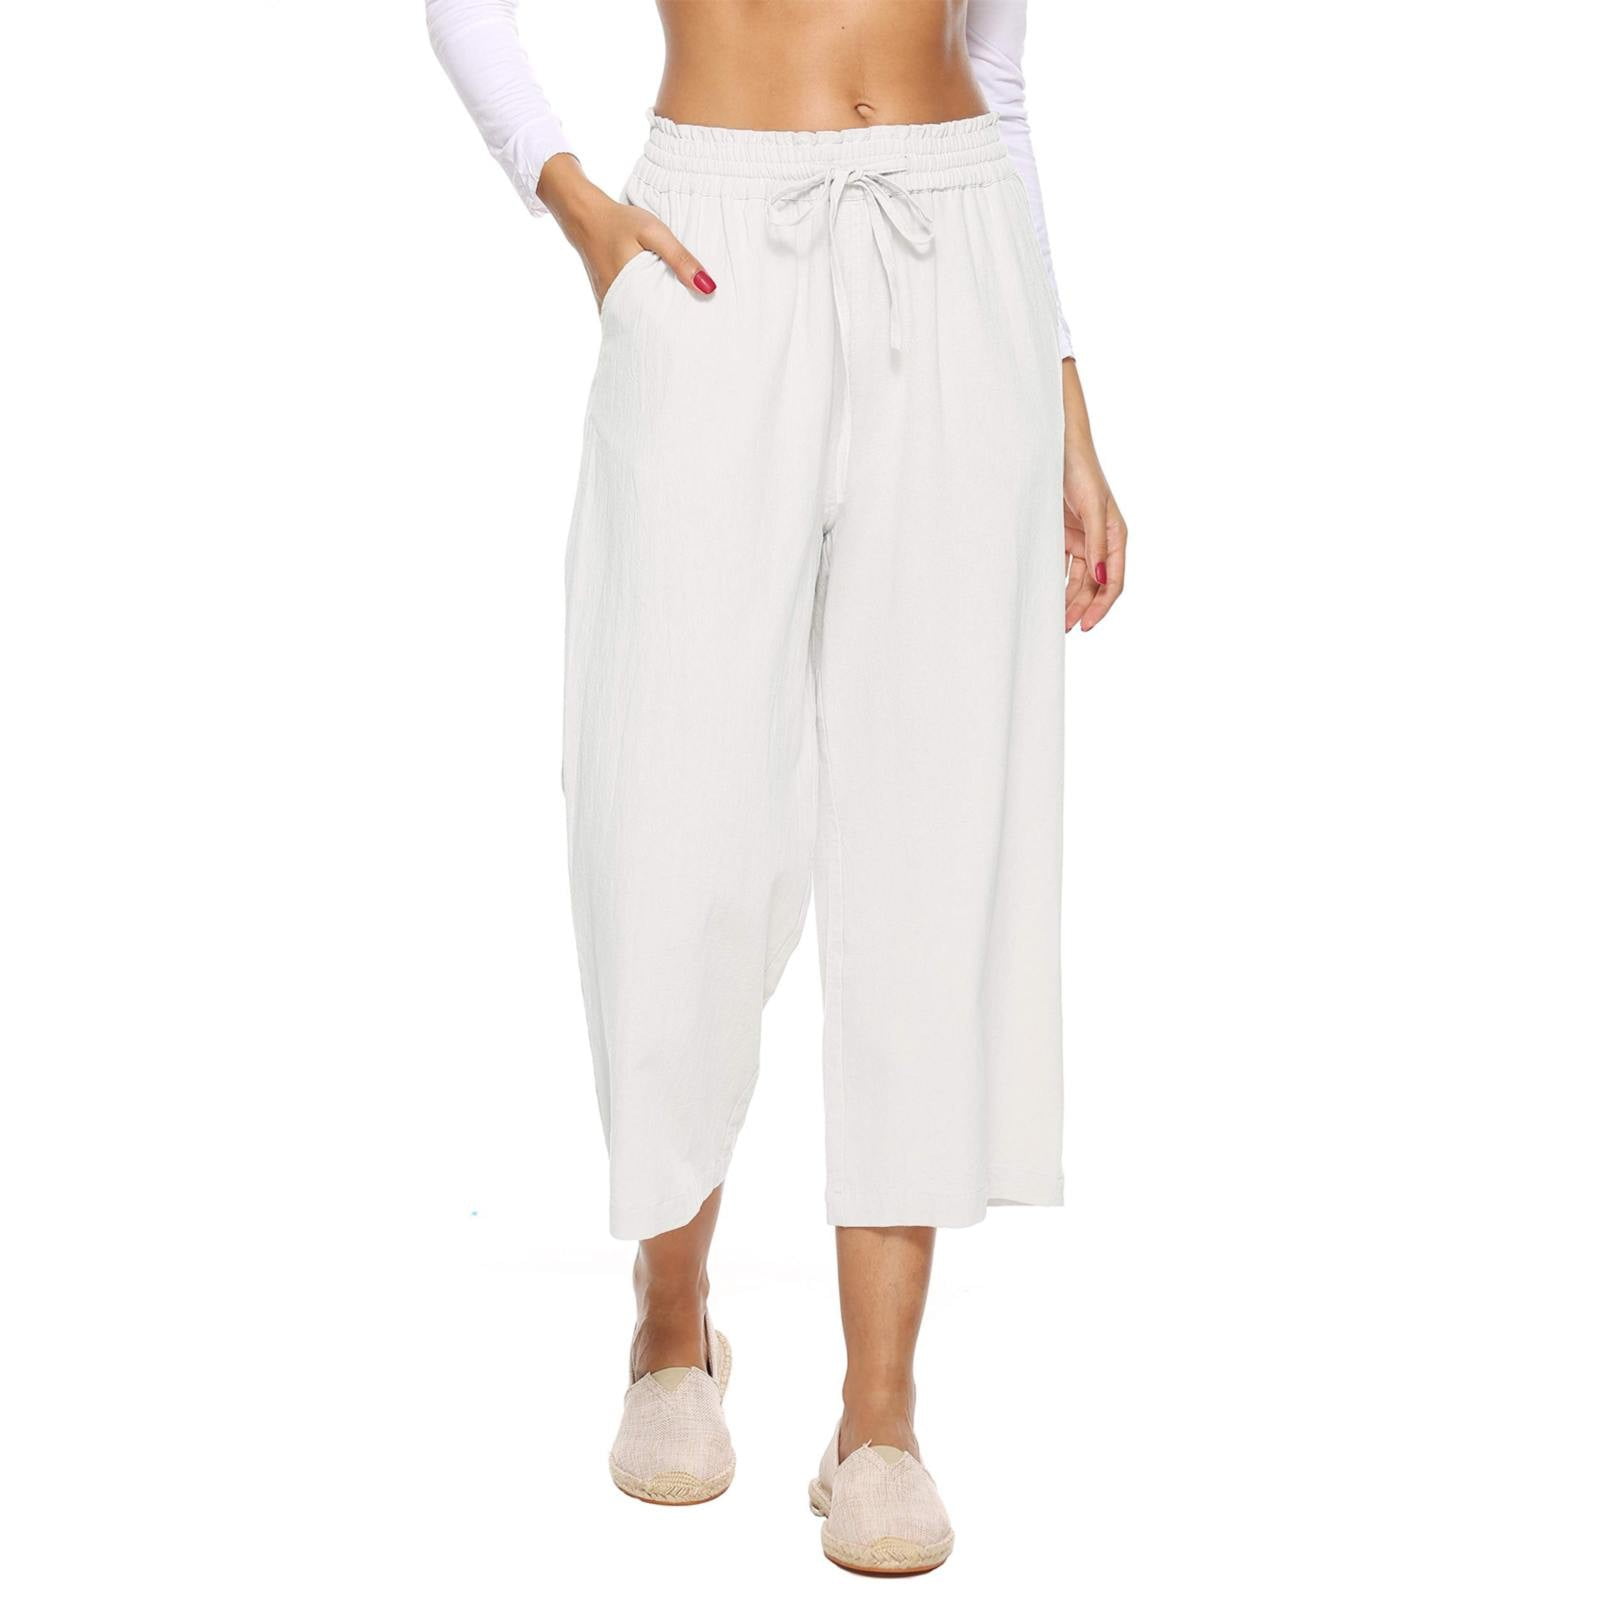 Buy Beige Pants for Women by PROJECT EVE Online  Ajiocom